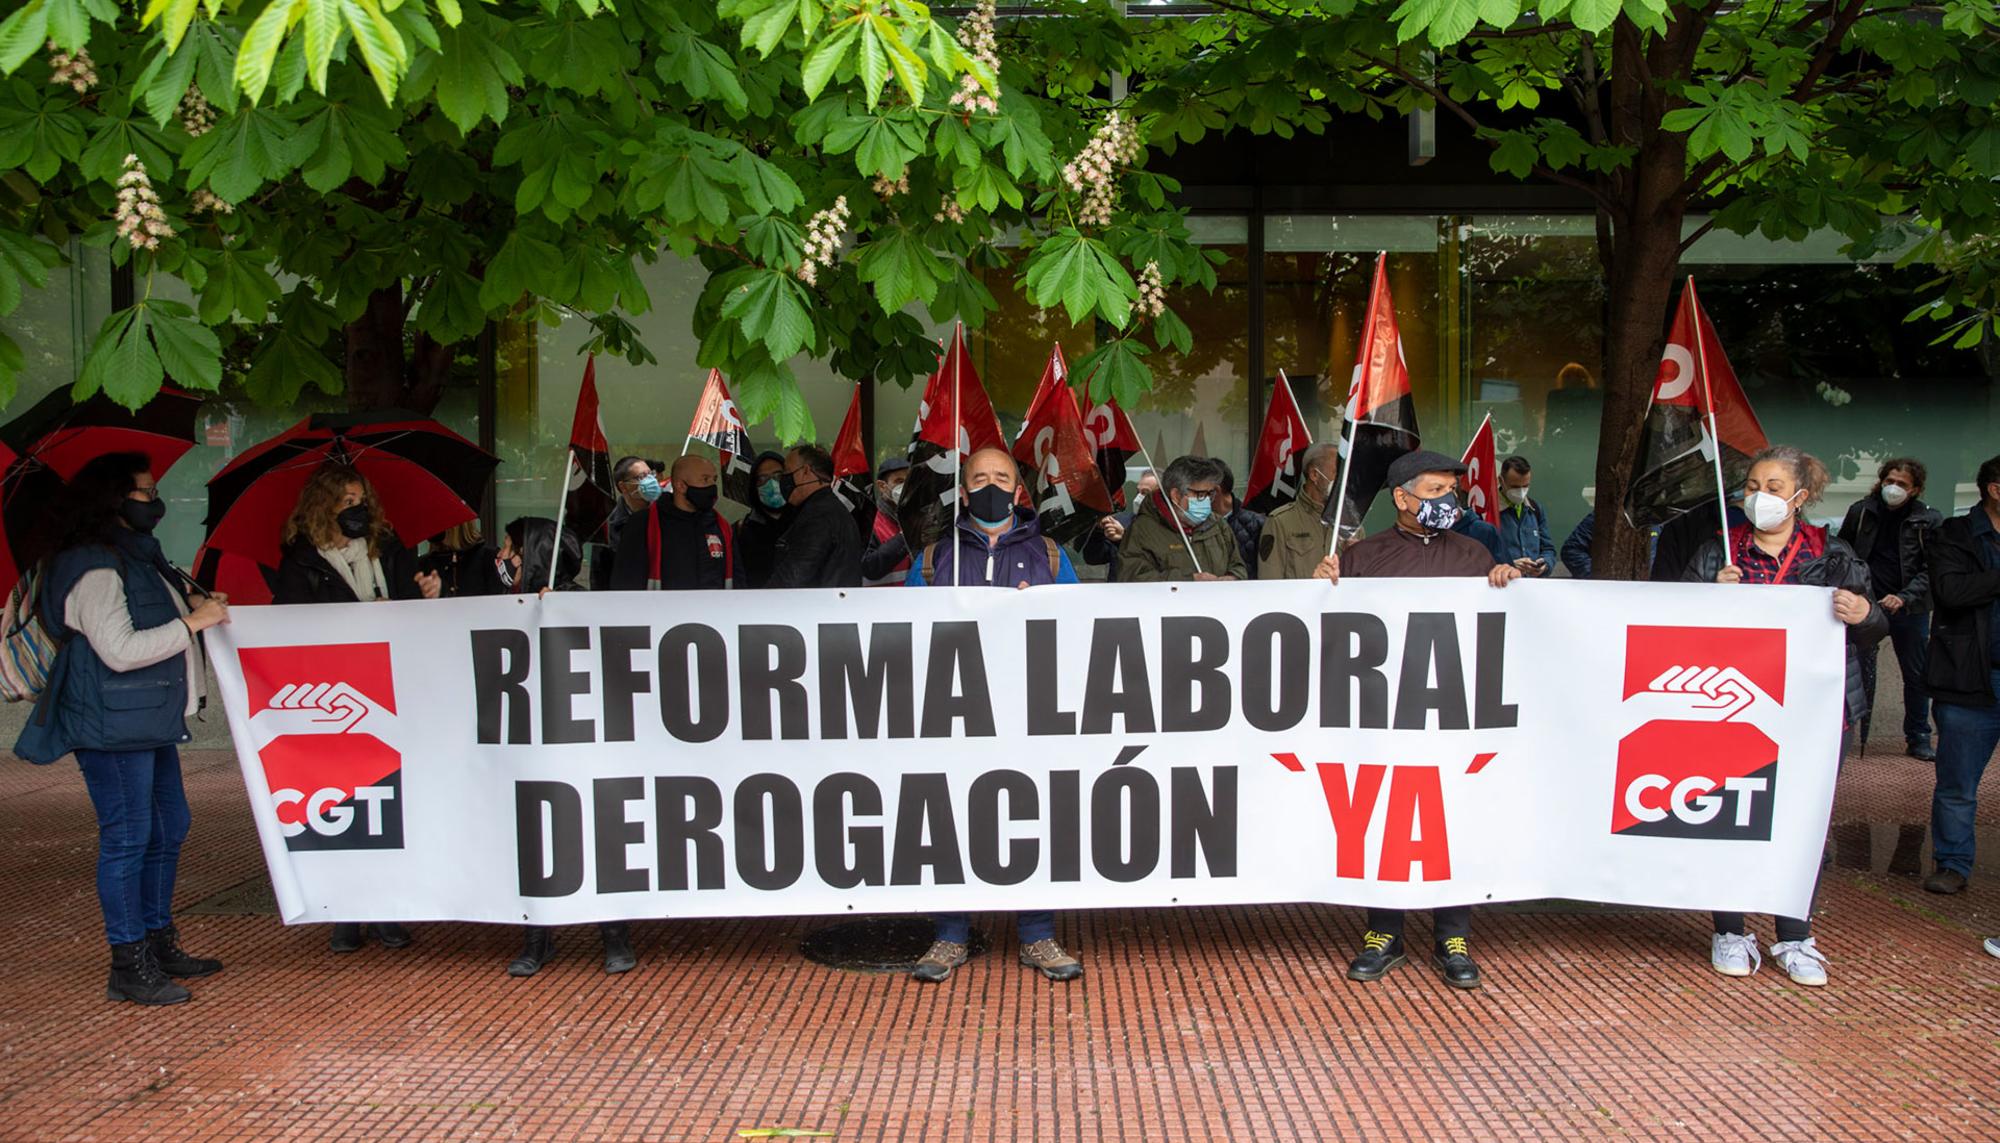 Reforma Laboral